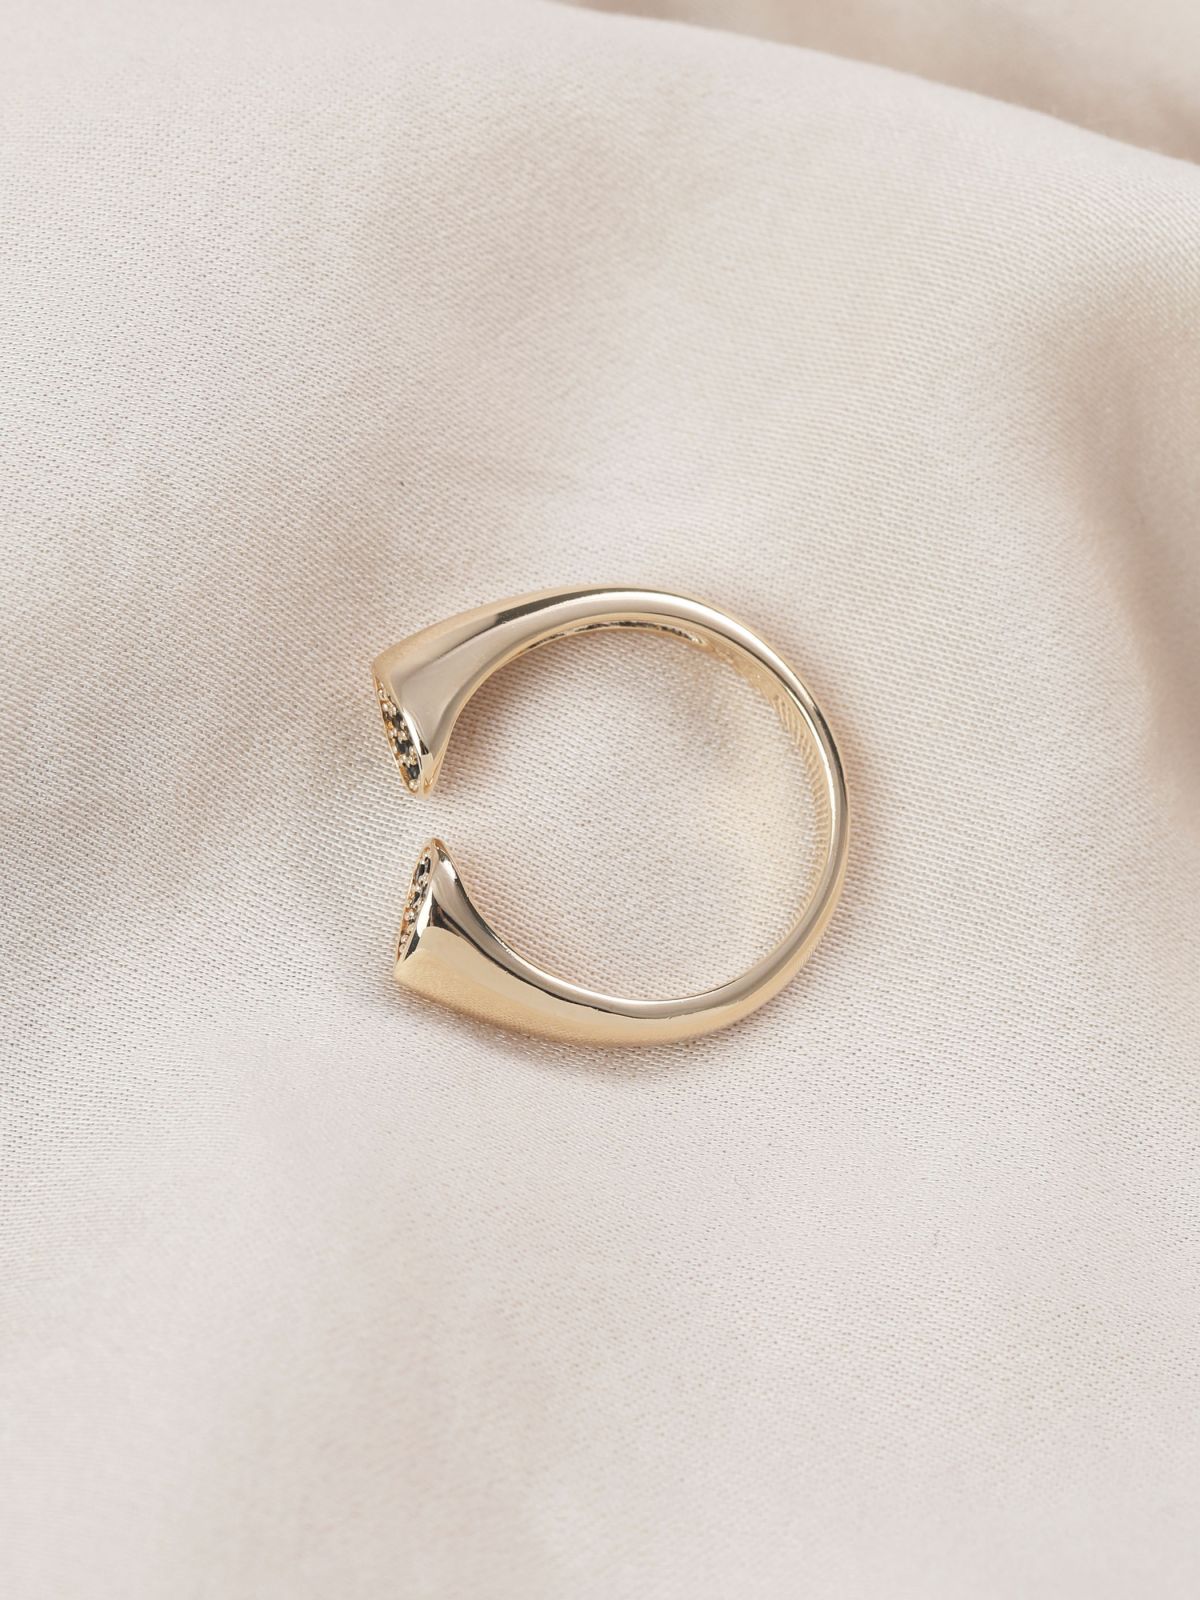  טבעת אליס ציפוי זהב של LUX